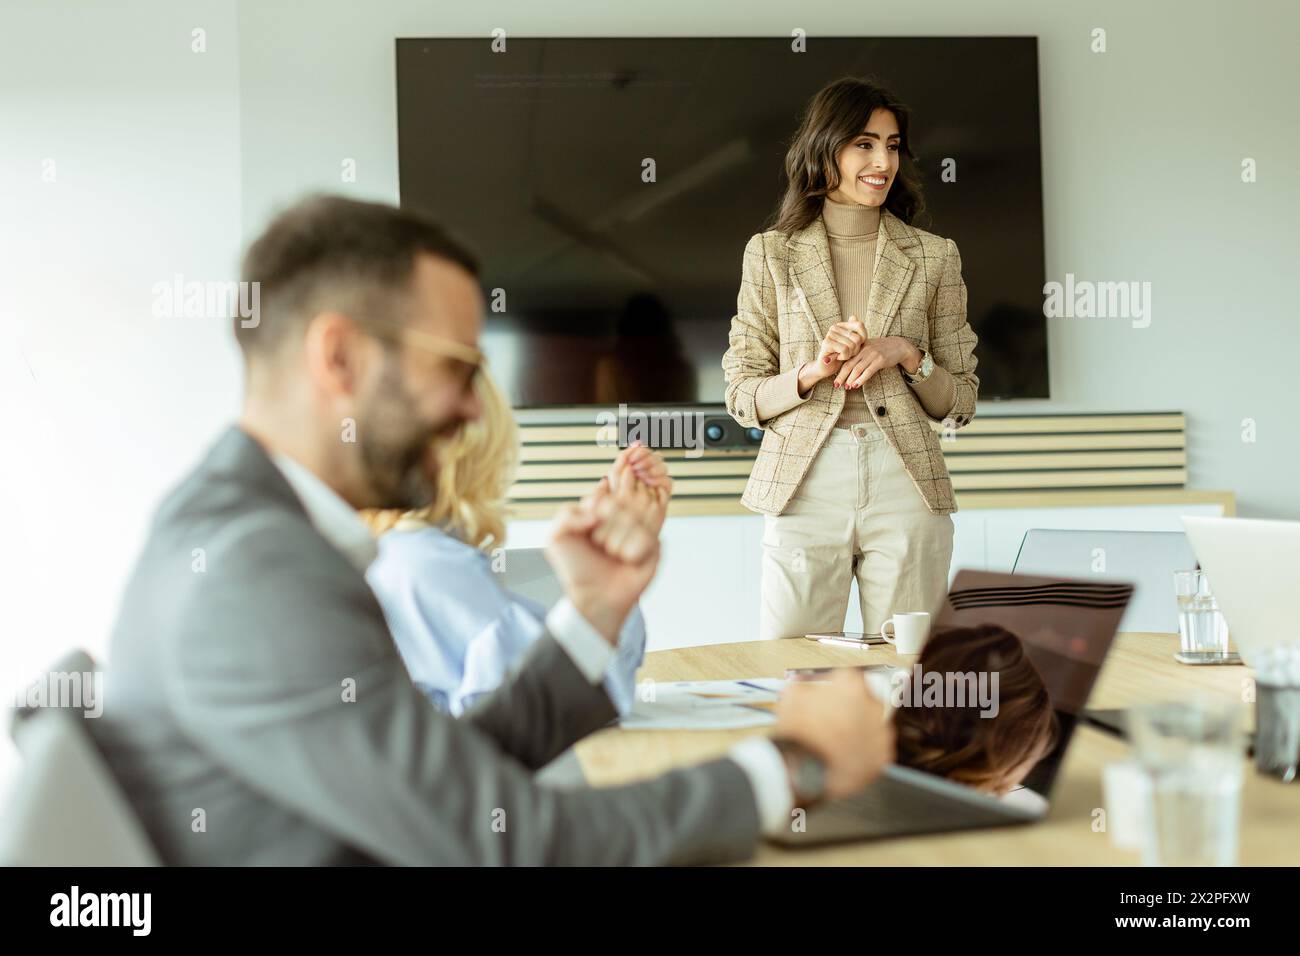 Die kompetente Frau präsentiert sich während eines Meetings vor Kollegen, wobei ihr Ausdruck Begeisterung und Führungsstärke zum Ausdruck bringt Stockfoto